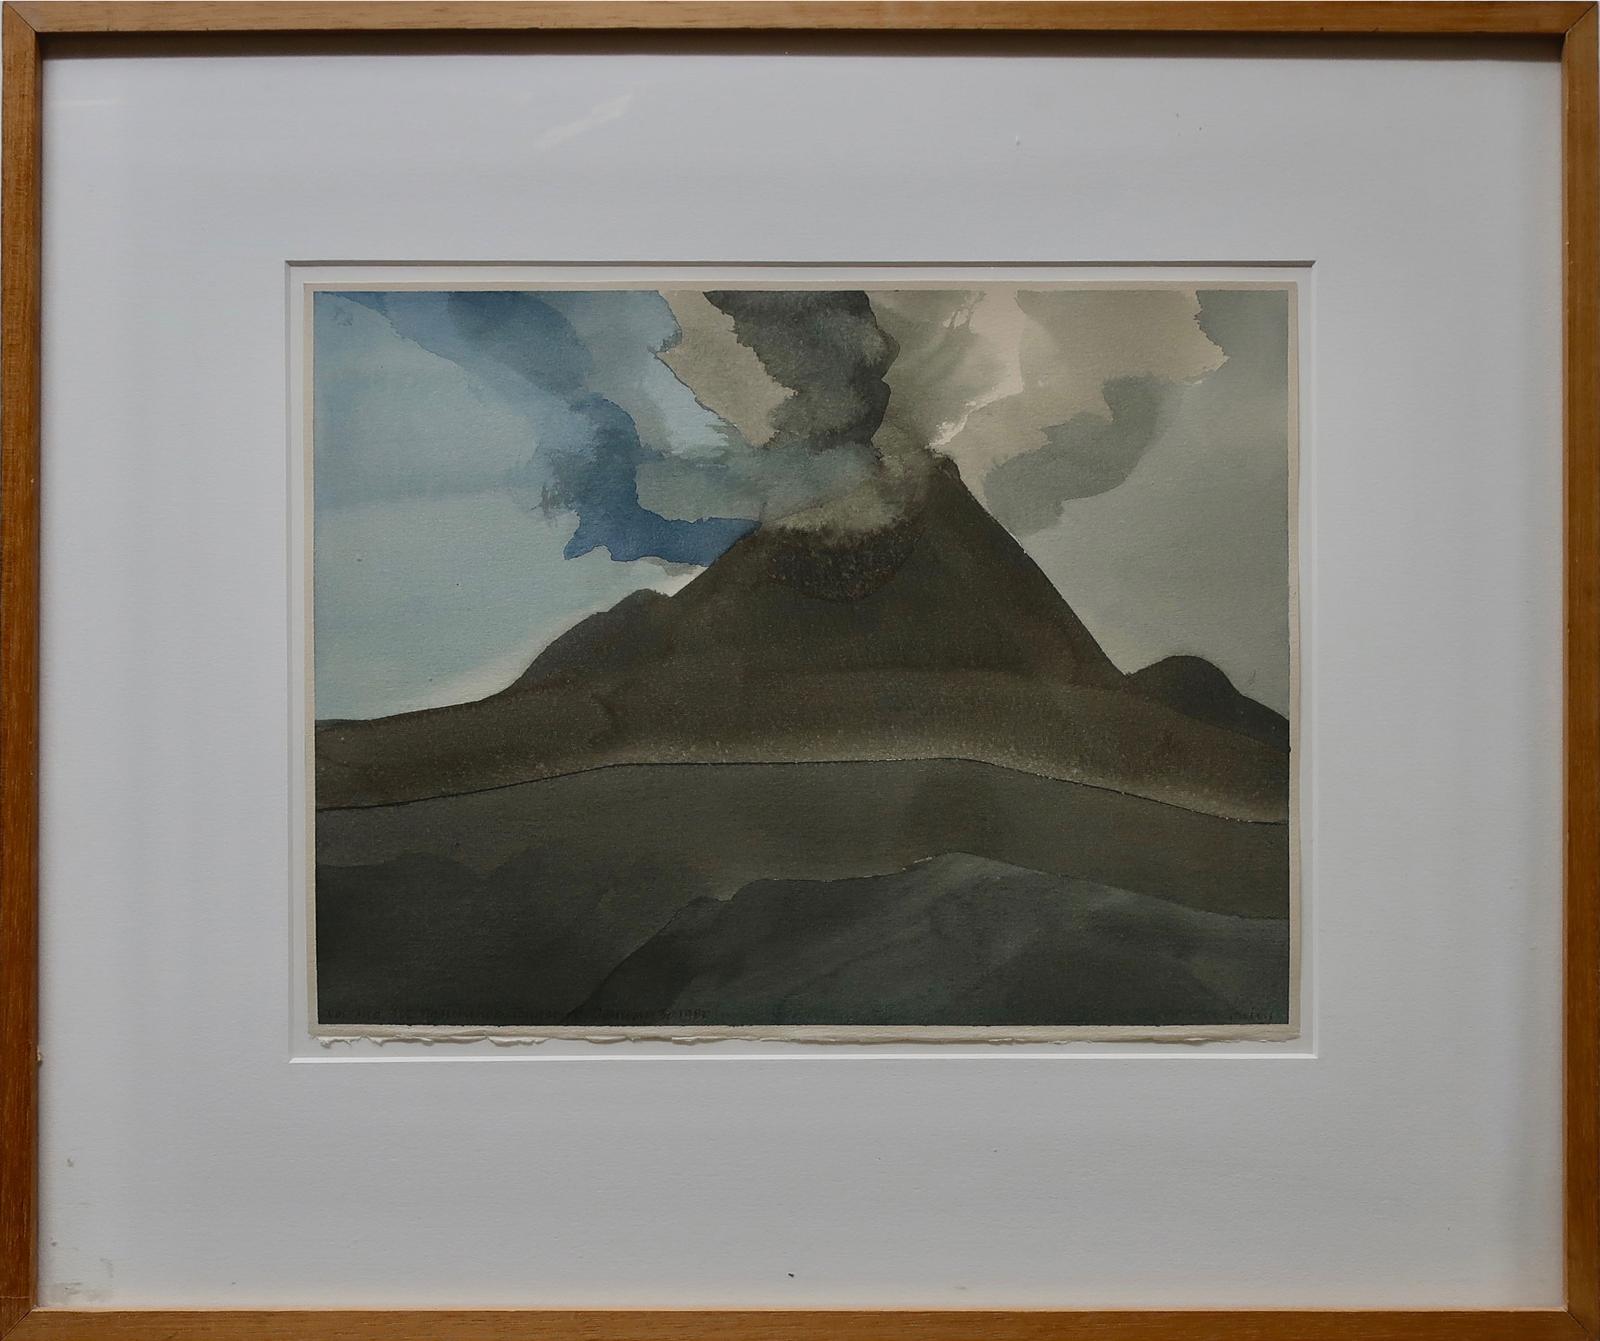 Norman Anthony (Toni) Onley (1928-2004) - Volcano, Mt. Ngauruhoe, Tongariro (New Zealand)